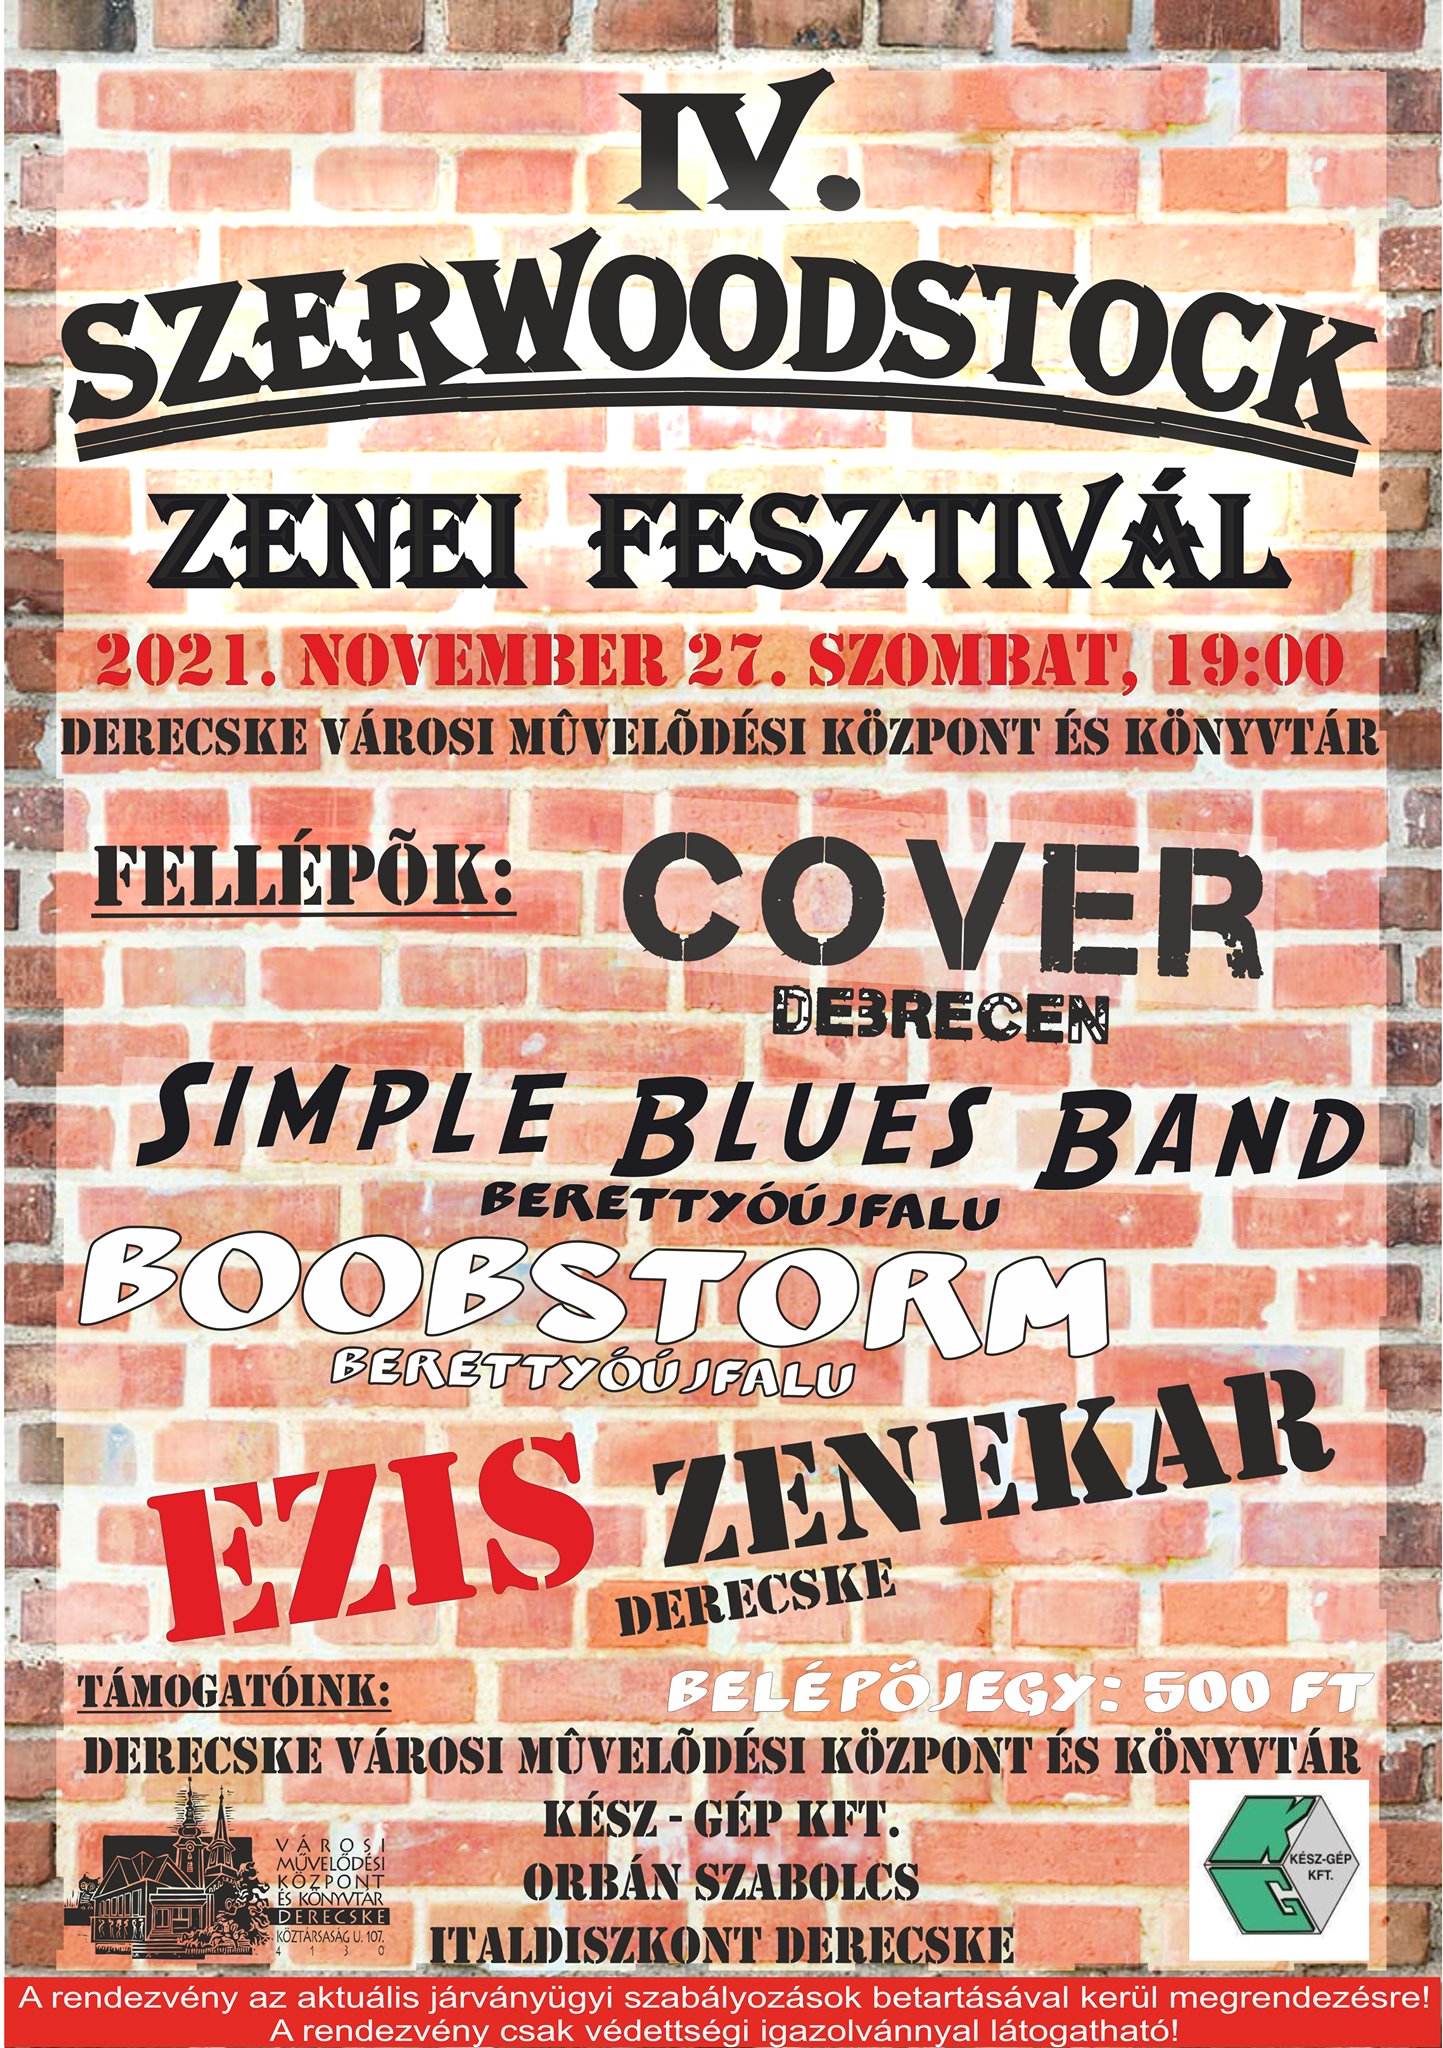 IV. Szerwoodstock Zenei Fesztivál